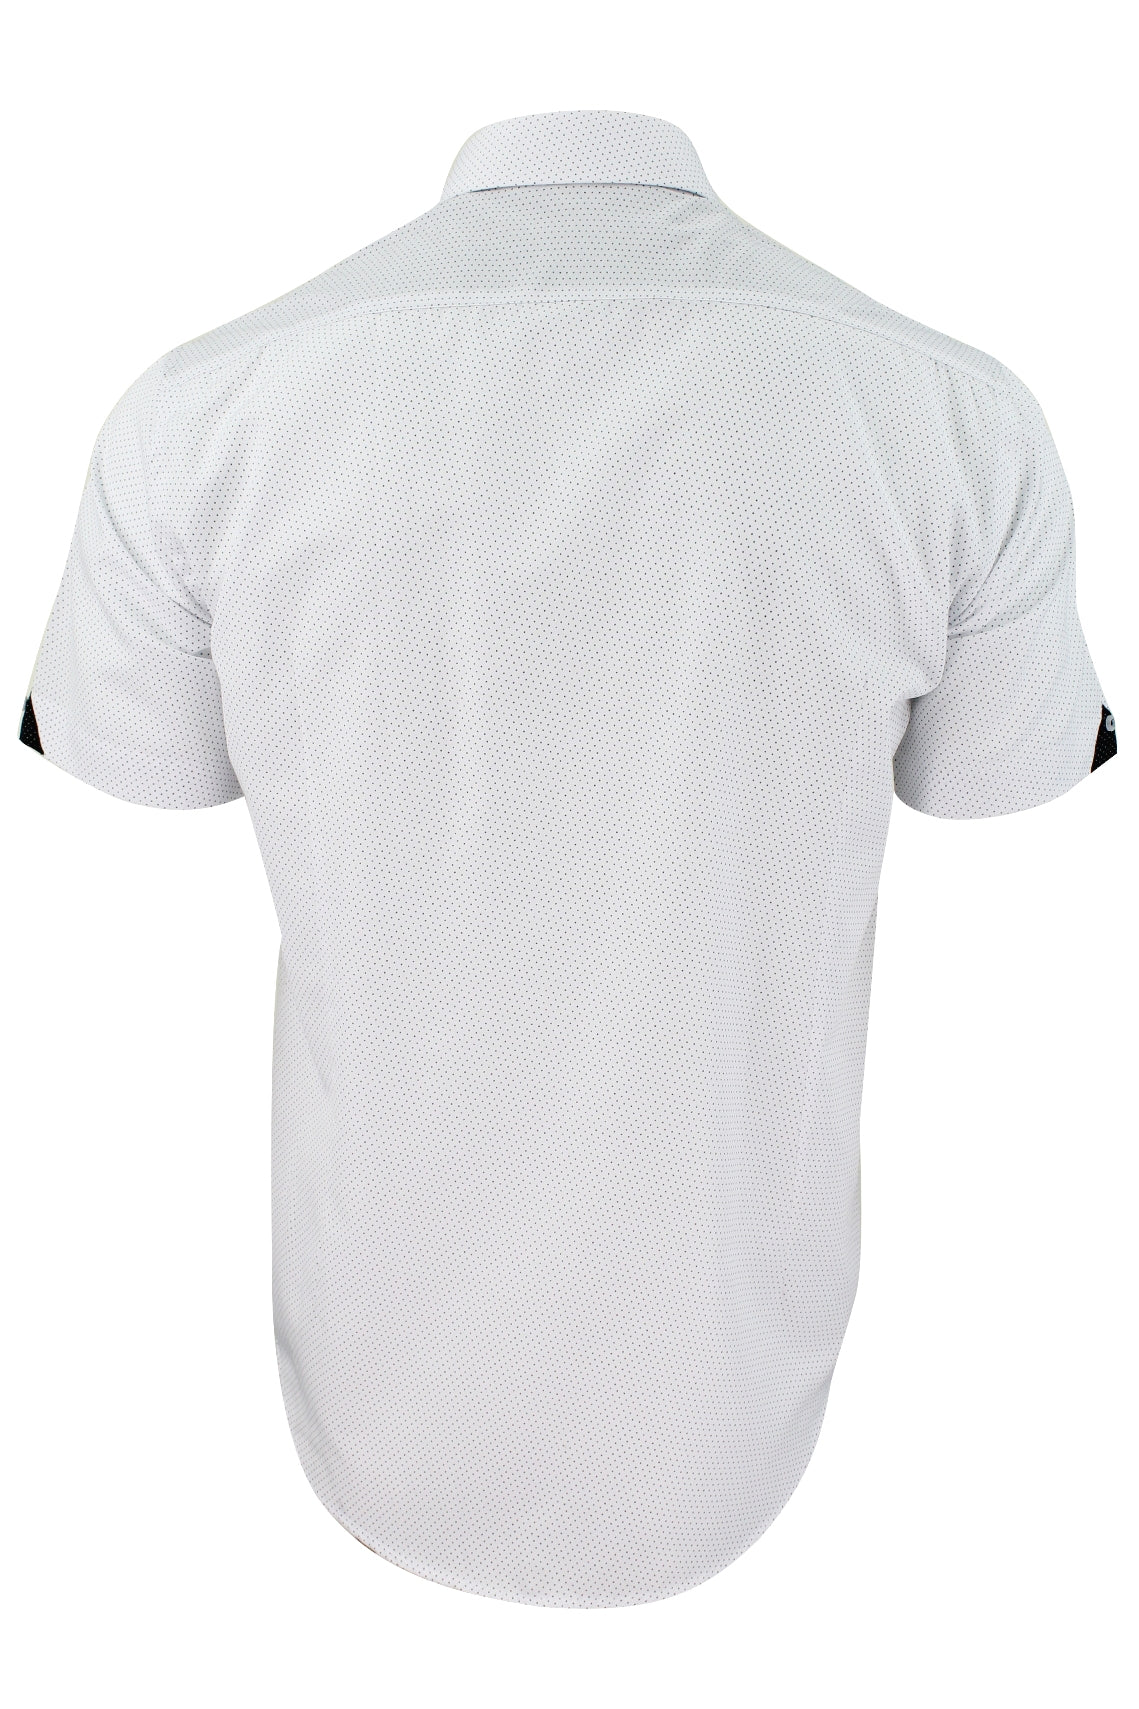 Xact "Mini Polka Dot" Short Sleeved Shirt, 03, K_1510120, White